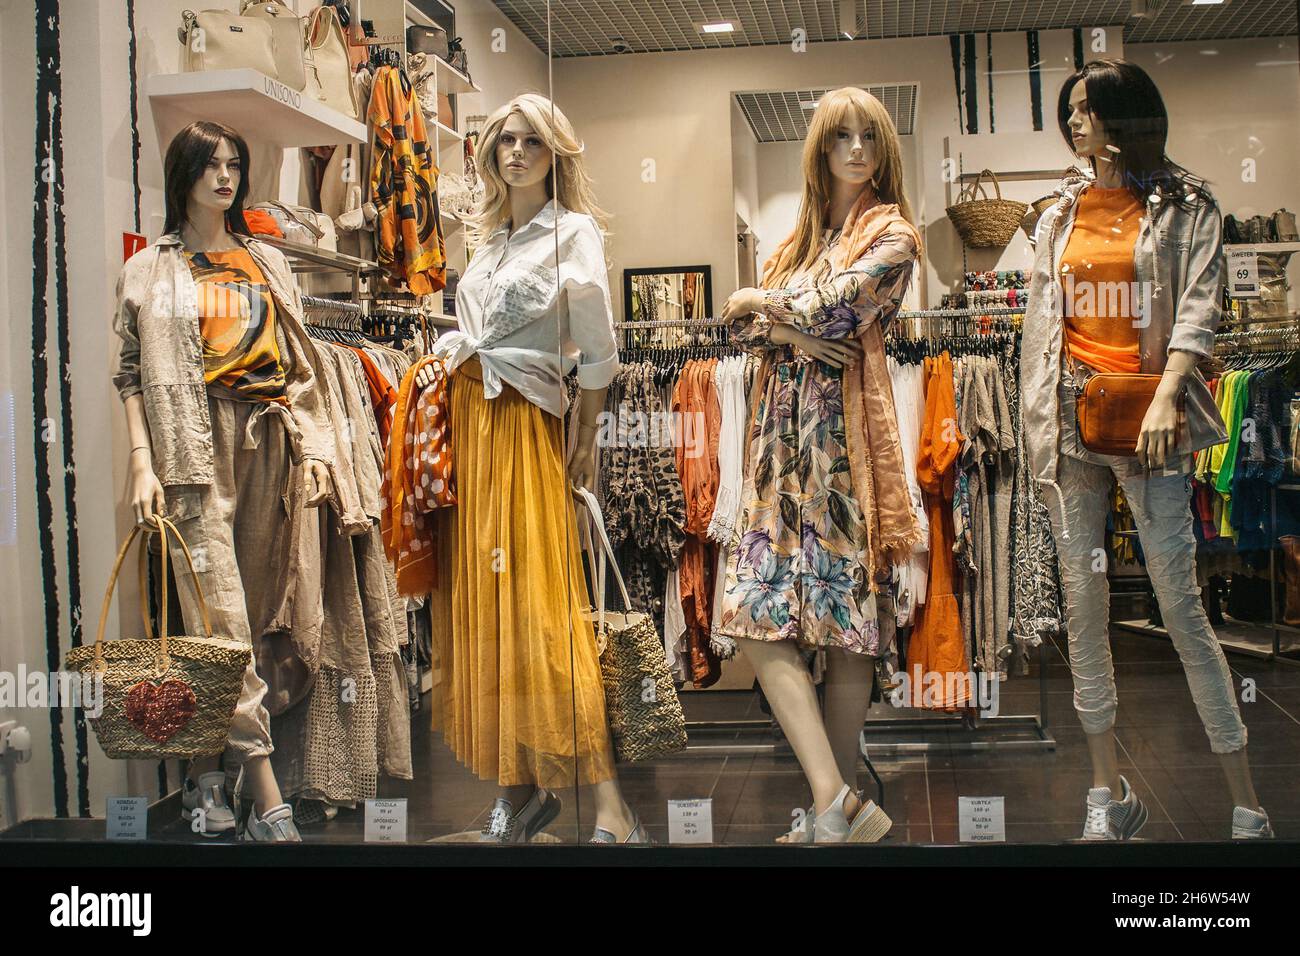 Polonia, Bydgoszcz - 15 de mayo de 2019: Los maniquíes femeninos demuestran una elegante colección de ropa de primavera de verano. Muñecas hermosas en el viento de la tienda Foto de stock